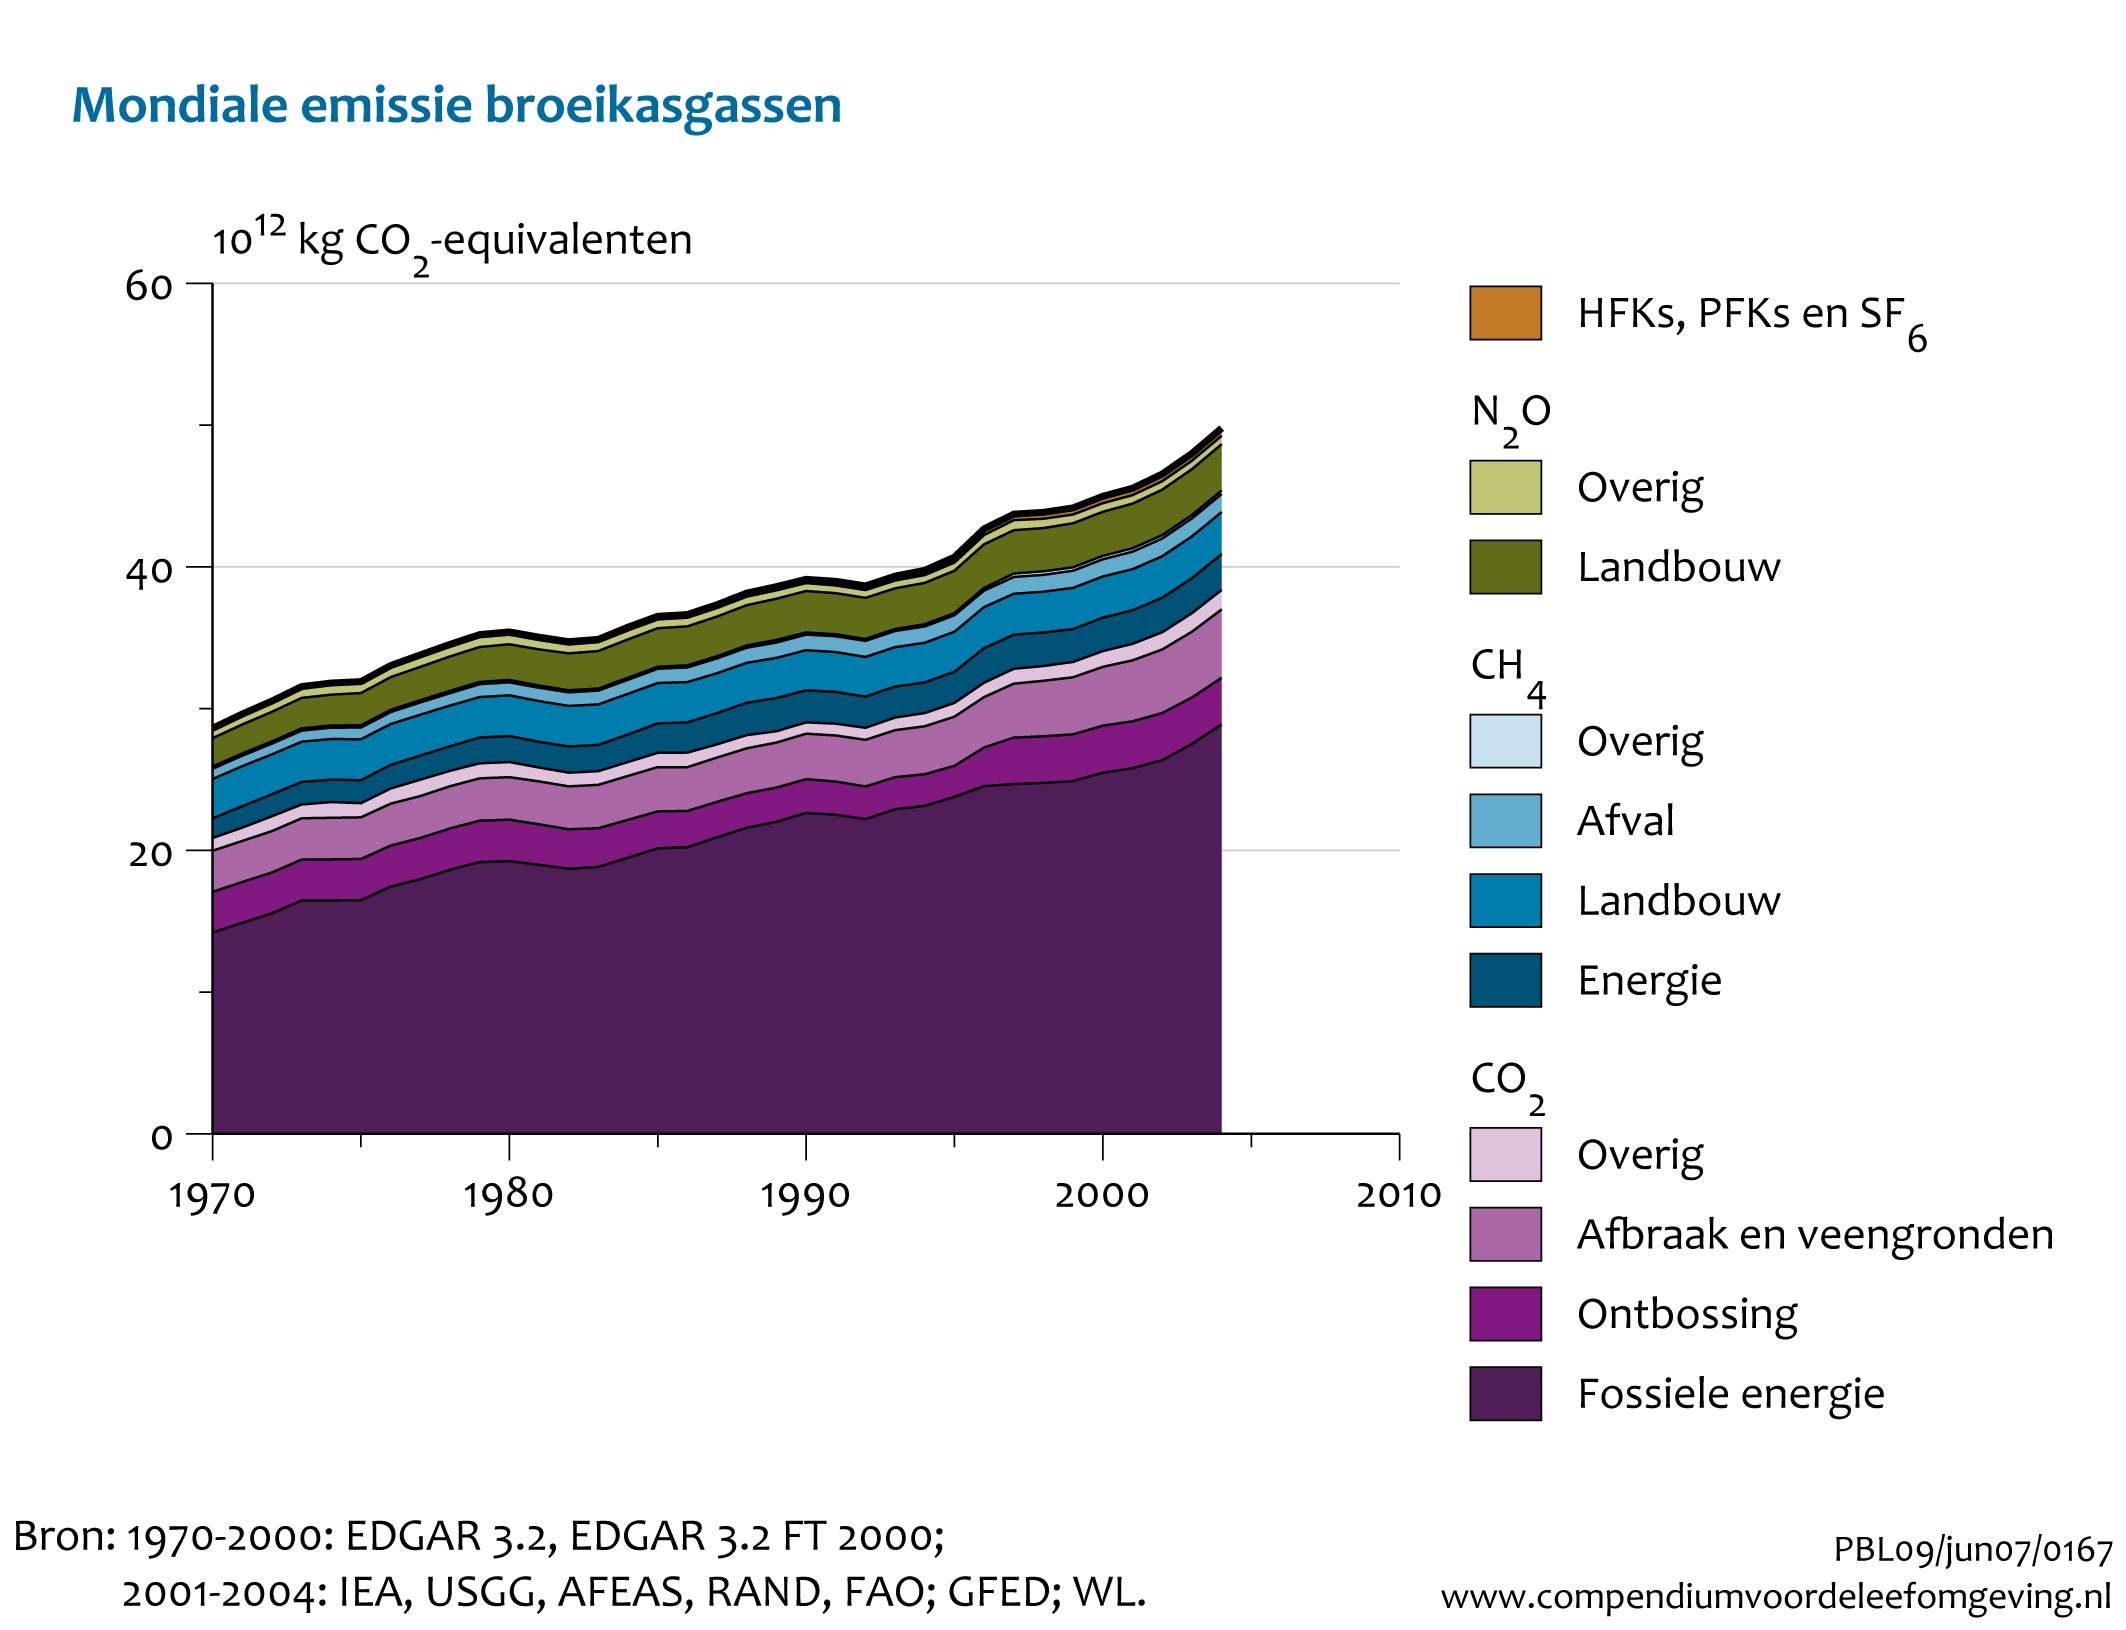 Figuur Figuur bij indicator Mondiale broeikasgasemissies, 1970-2004. In de rest van de tekst wordt deze figuur uitgebreider uitgelegd.